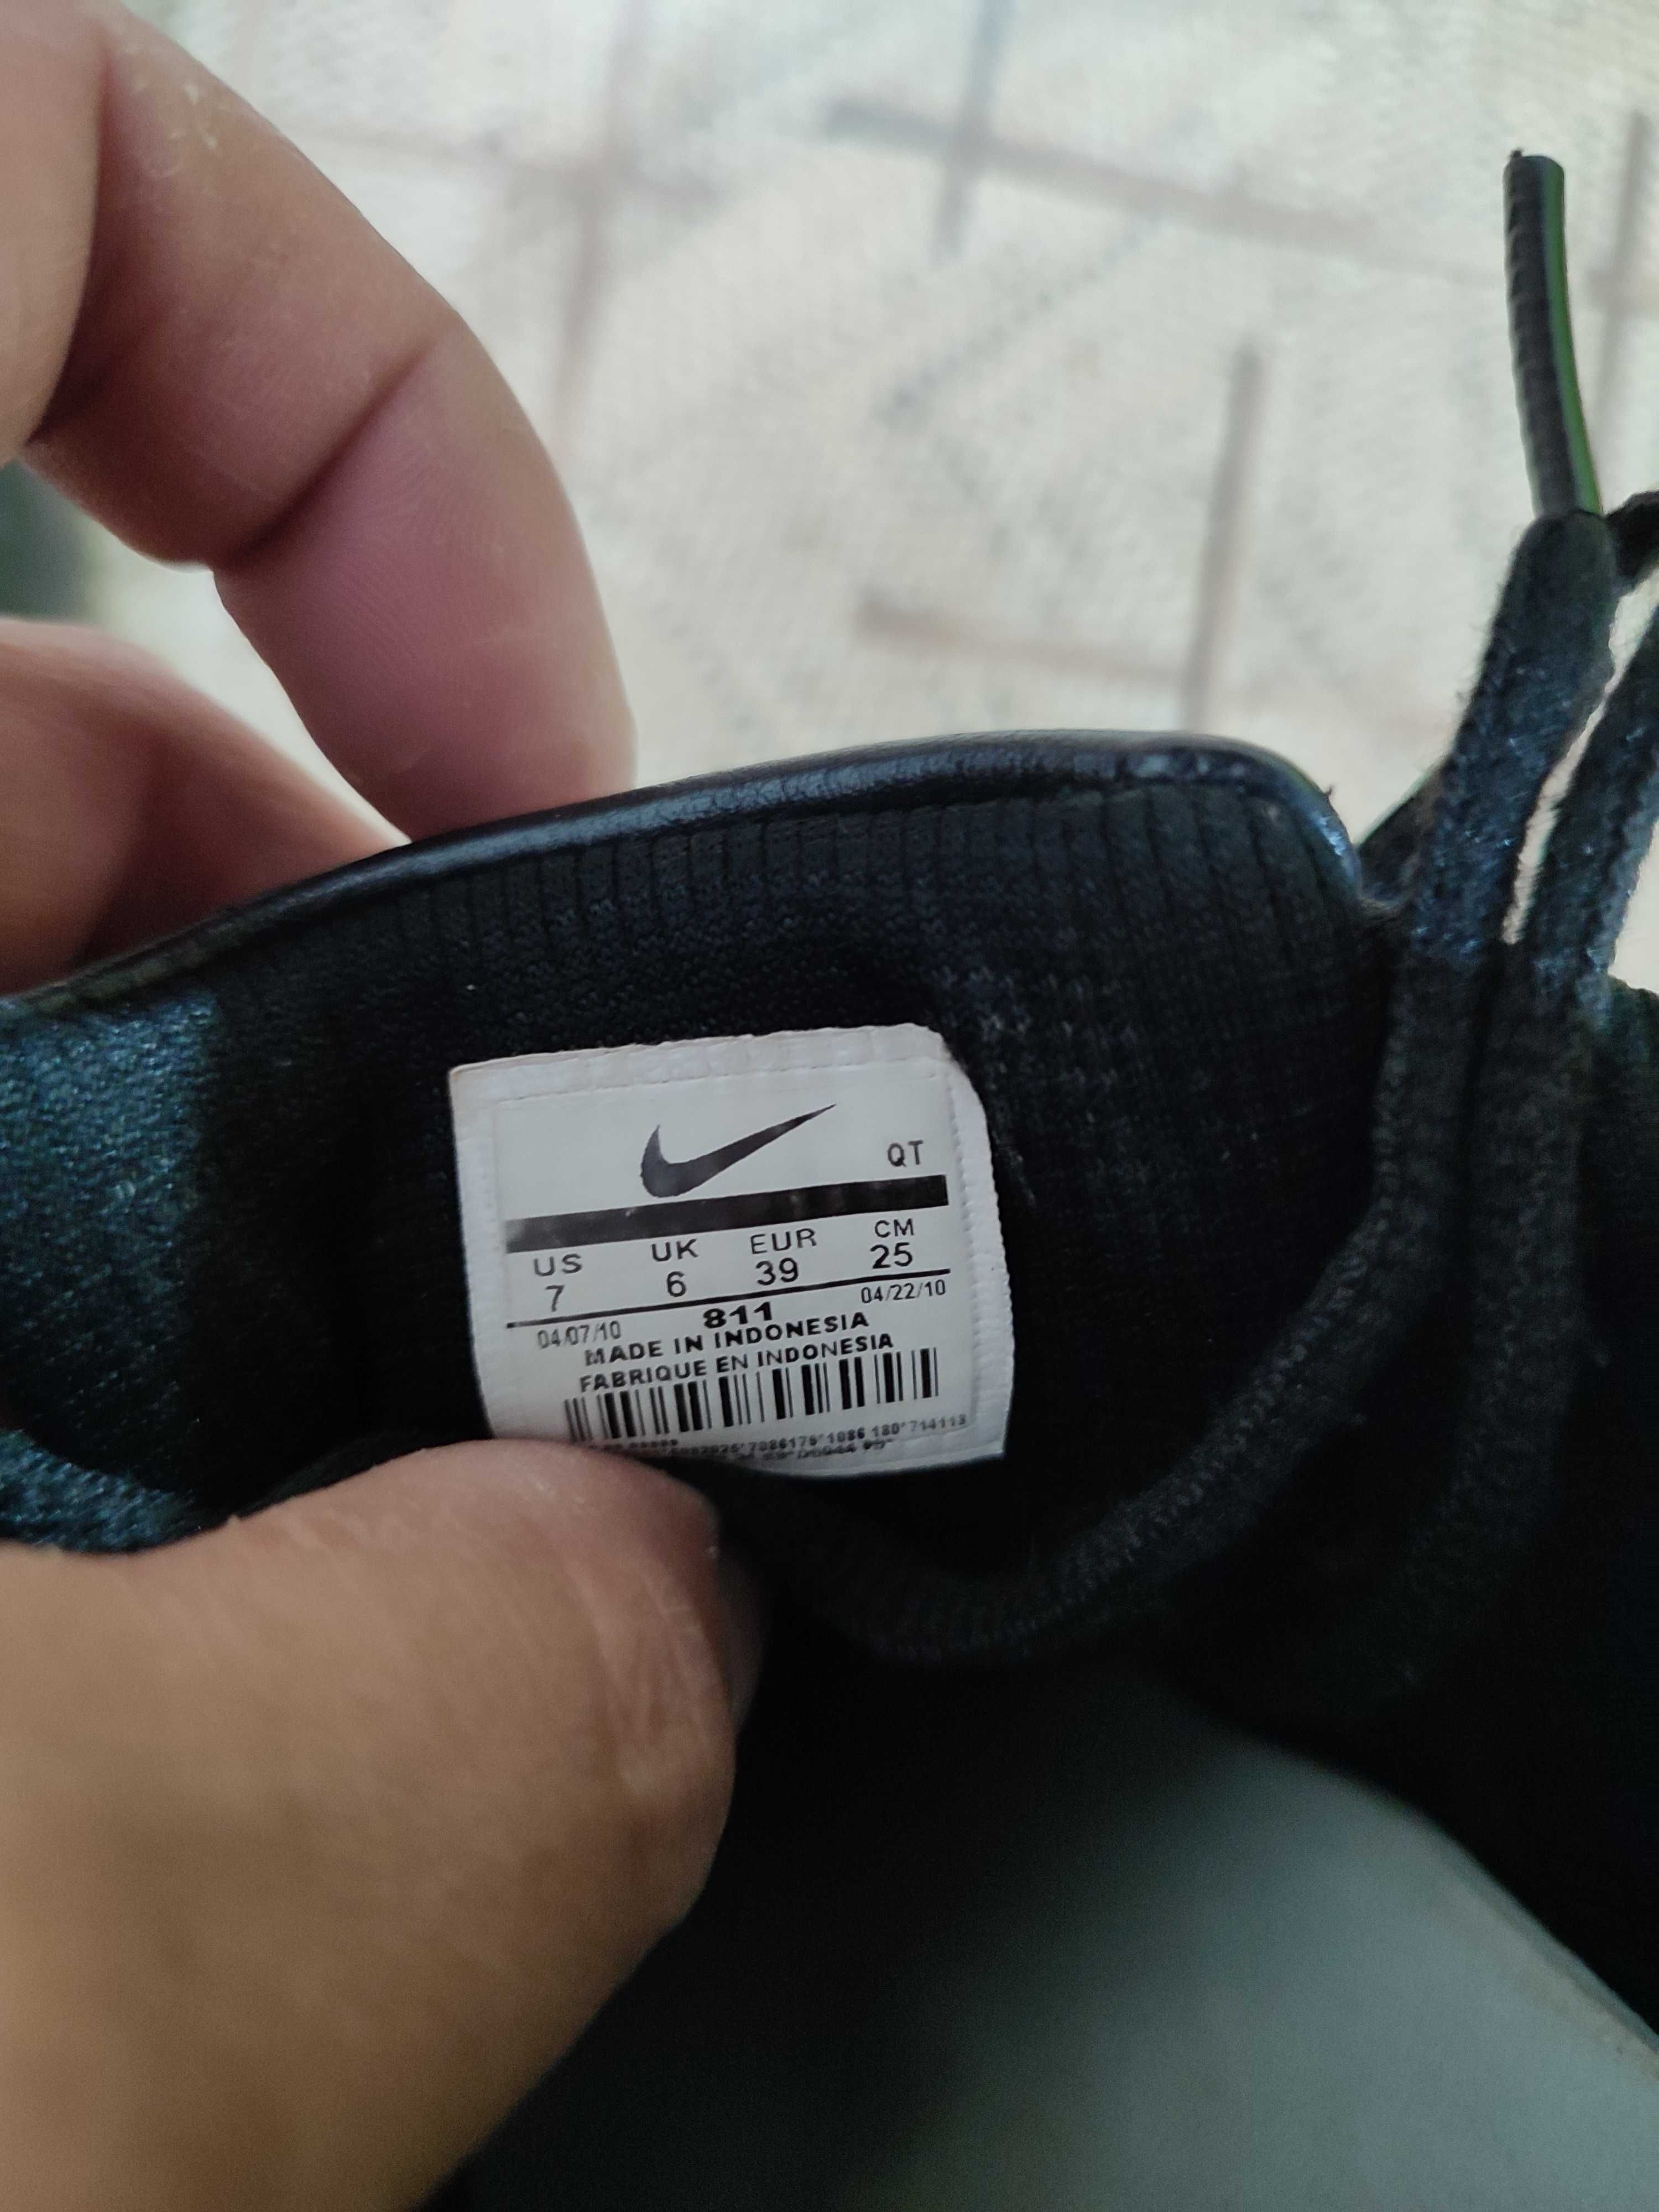 Кожаные кроссовки Nike, размер 38-39 обувь в отличном состоянии